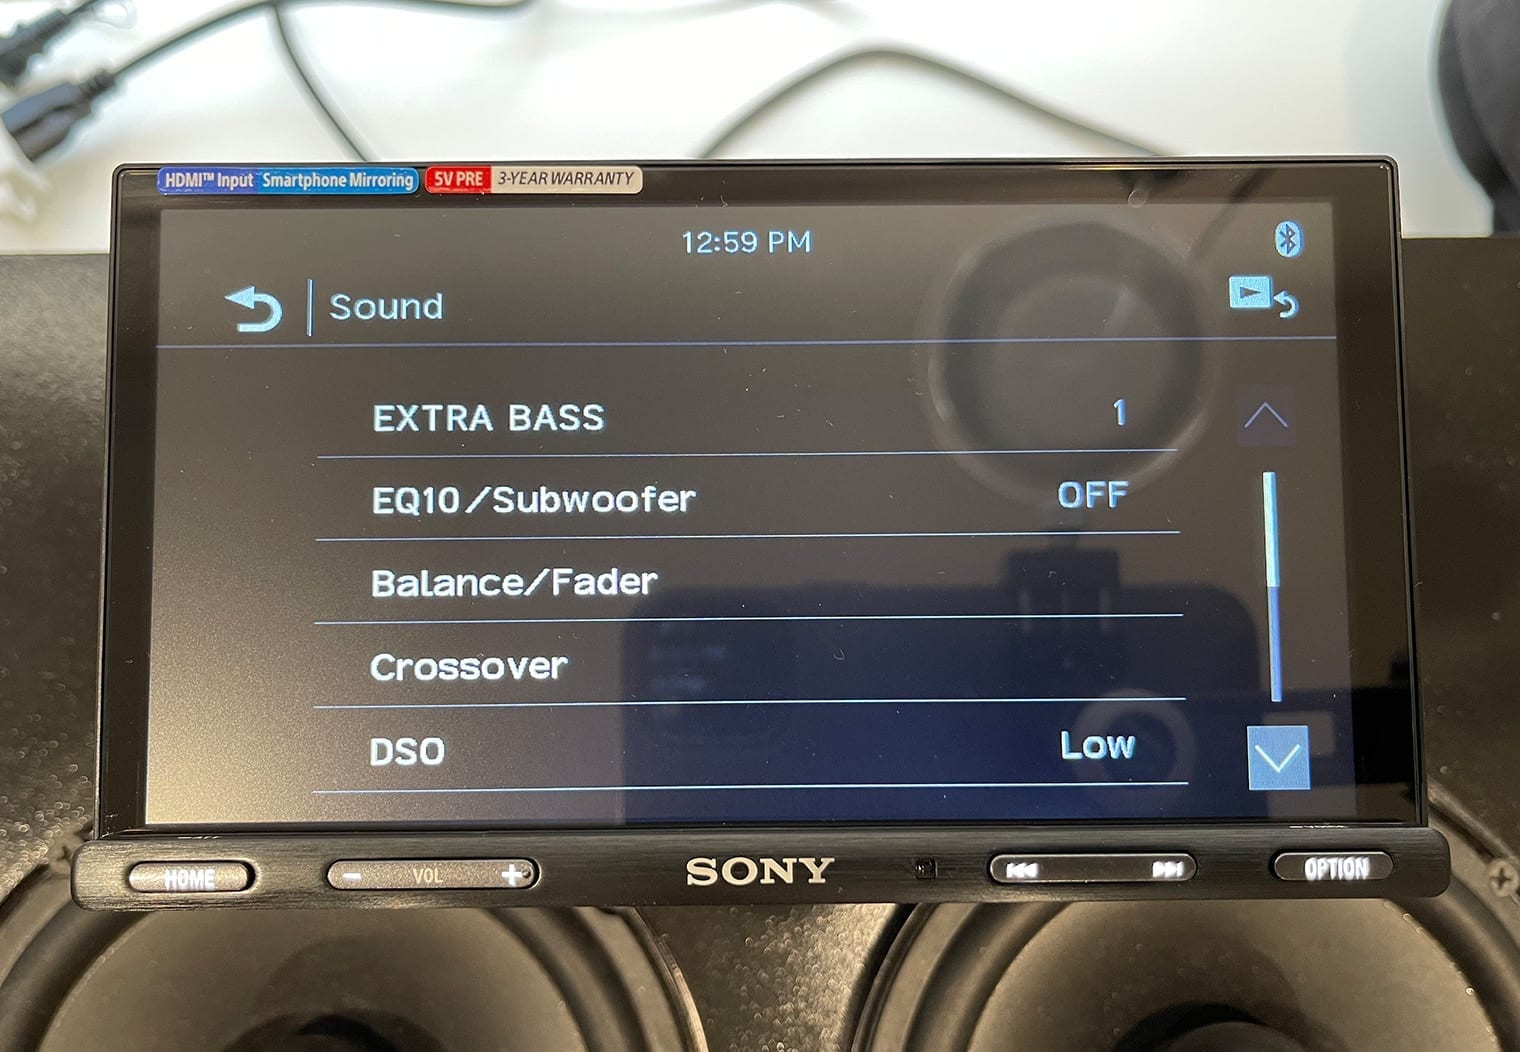 Sony XAV-AX5600 sound settings